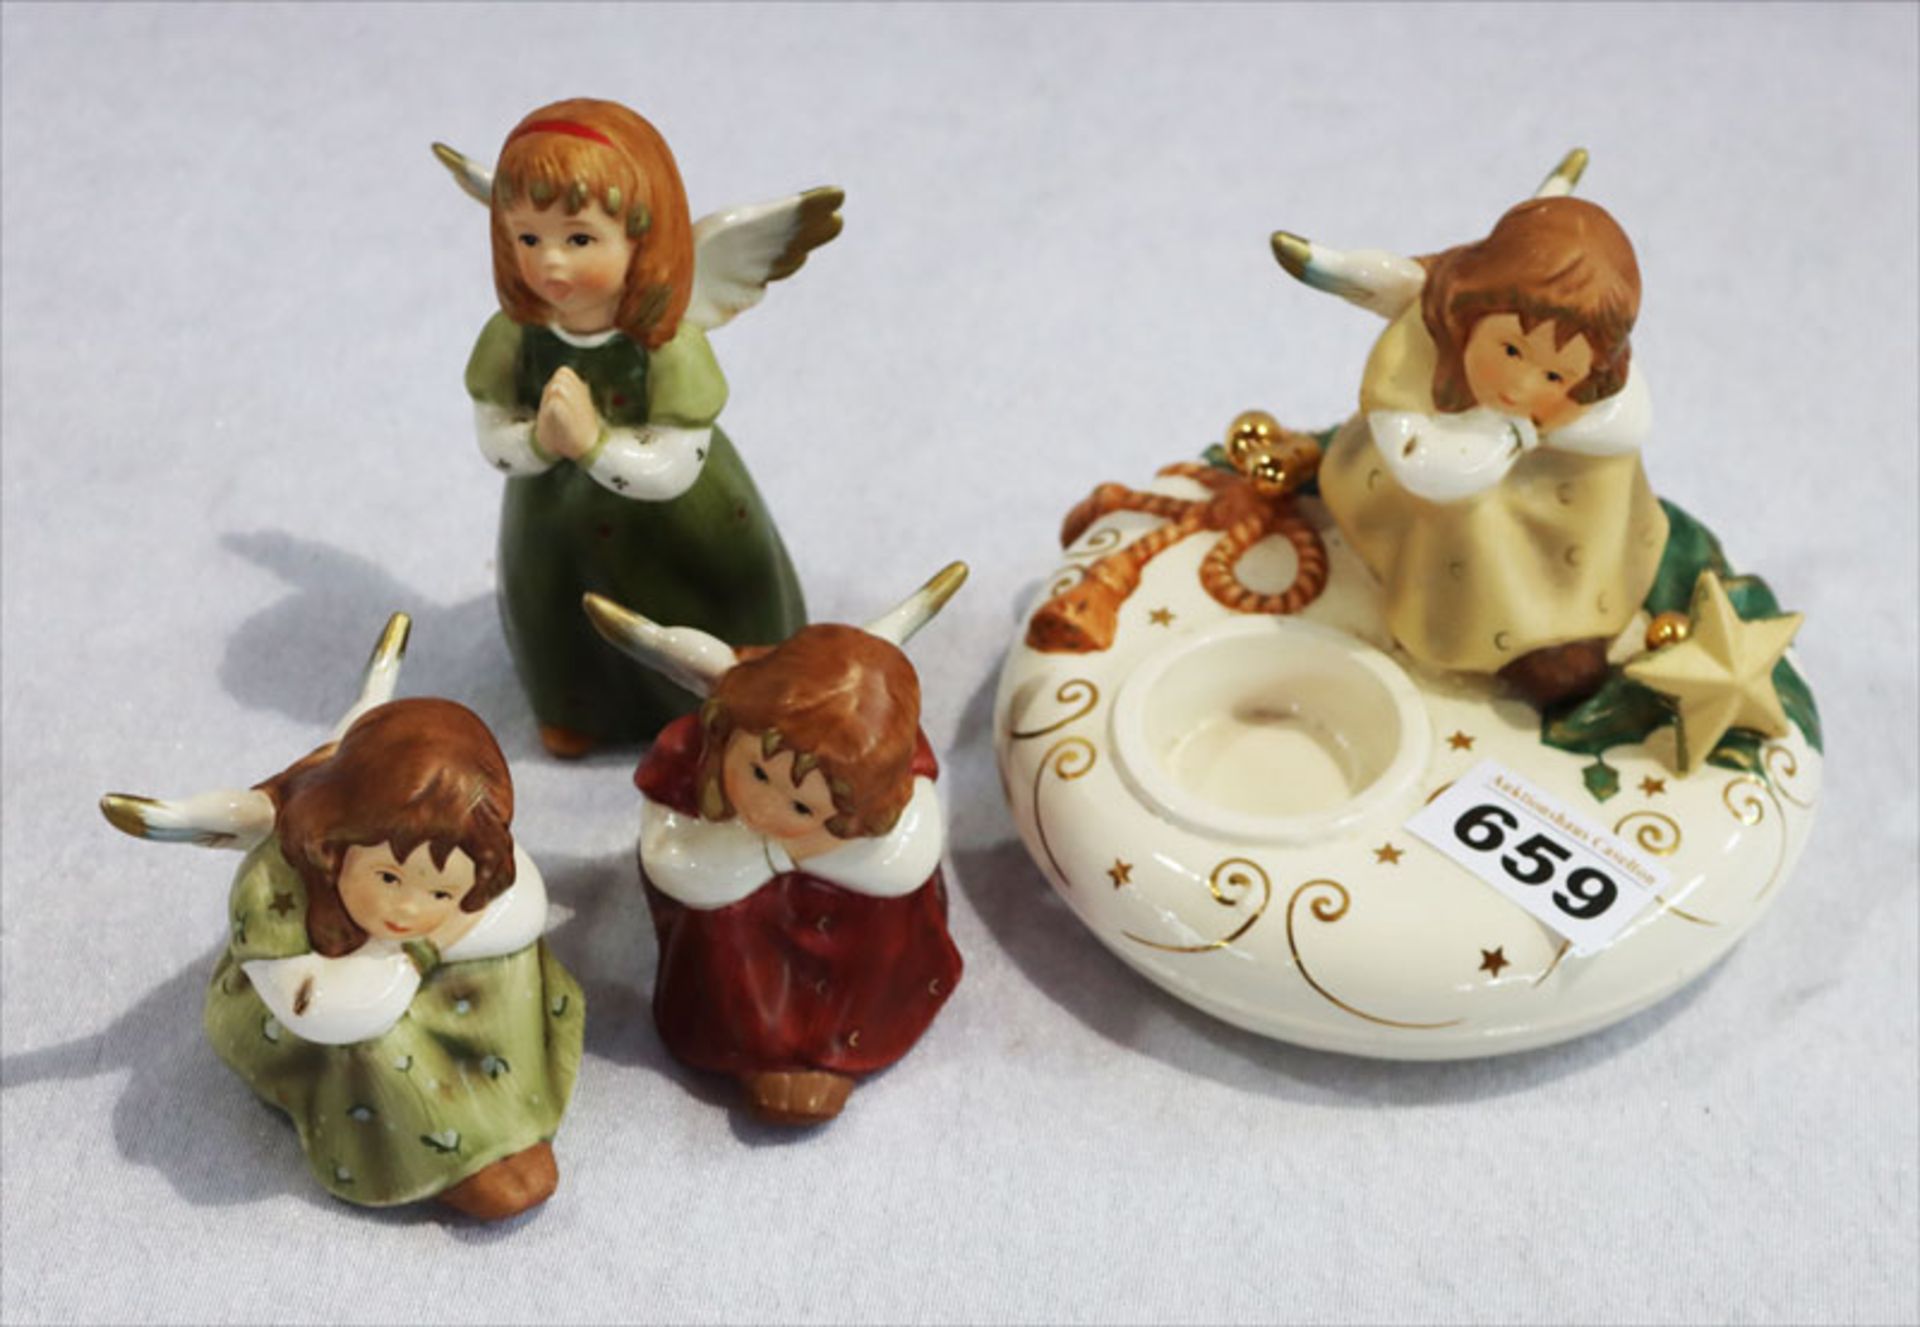 Konvolut: Goebel Teelichthalter mit Engel, Nr. 44 027, H 11,5 cm, D 13,5 cm, sowie 2 sitzenden Engel